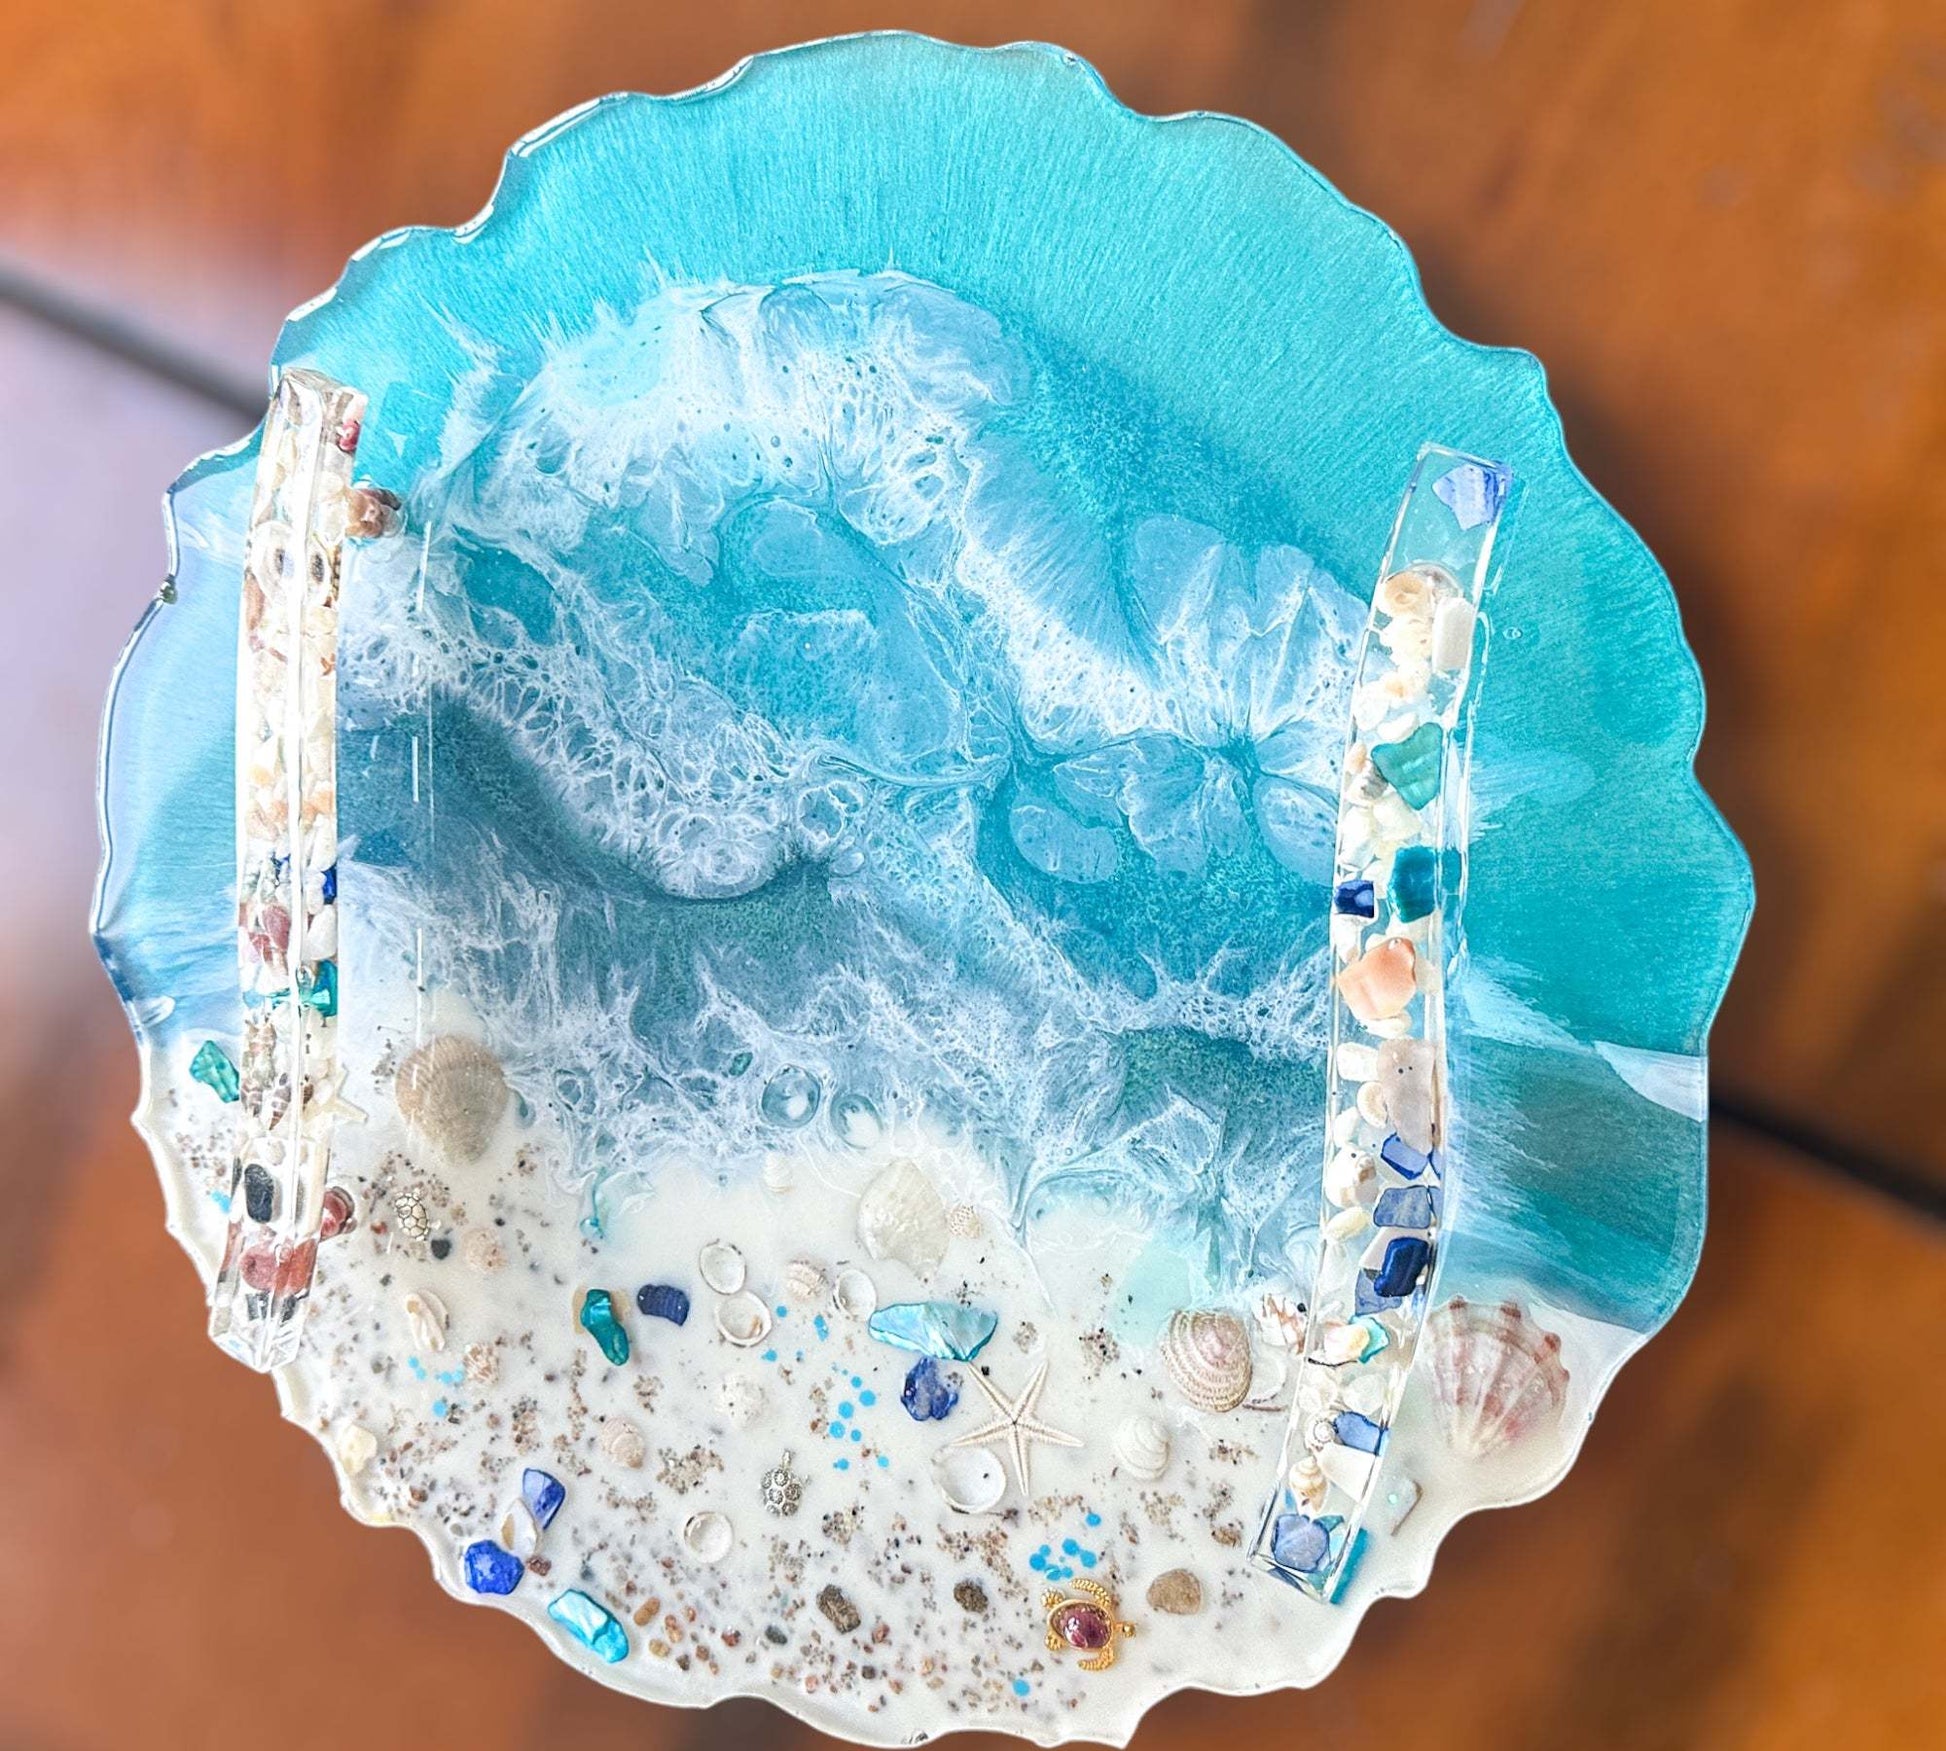 Seaside Splendor: Ocean Inspired Epoxy Resin Tray